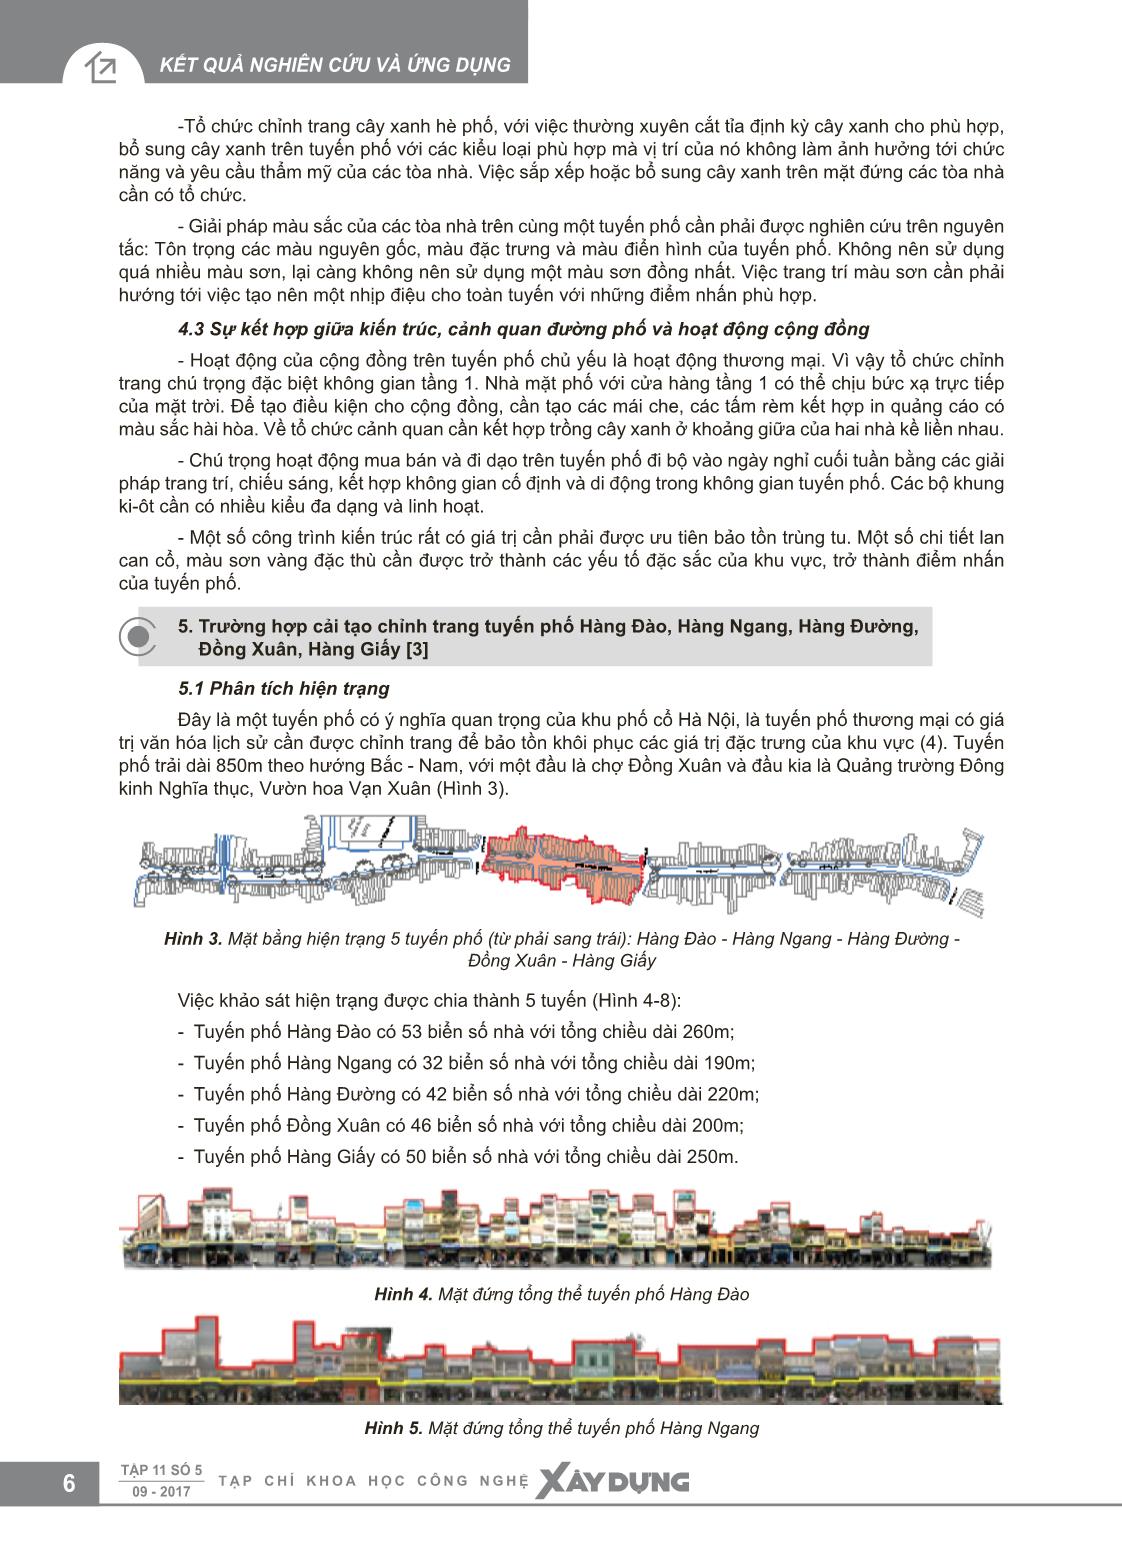 Cải tạo chỉnh trang các tuyến phố trung tâm Hà Nội trang 4